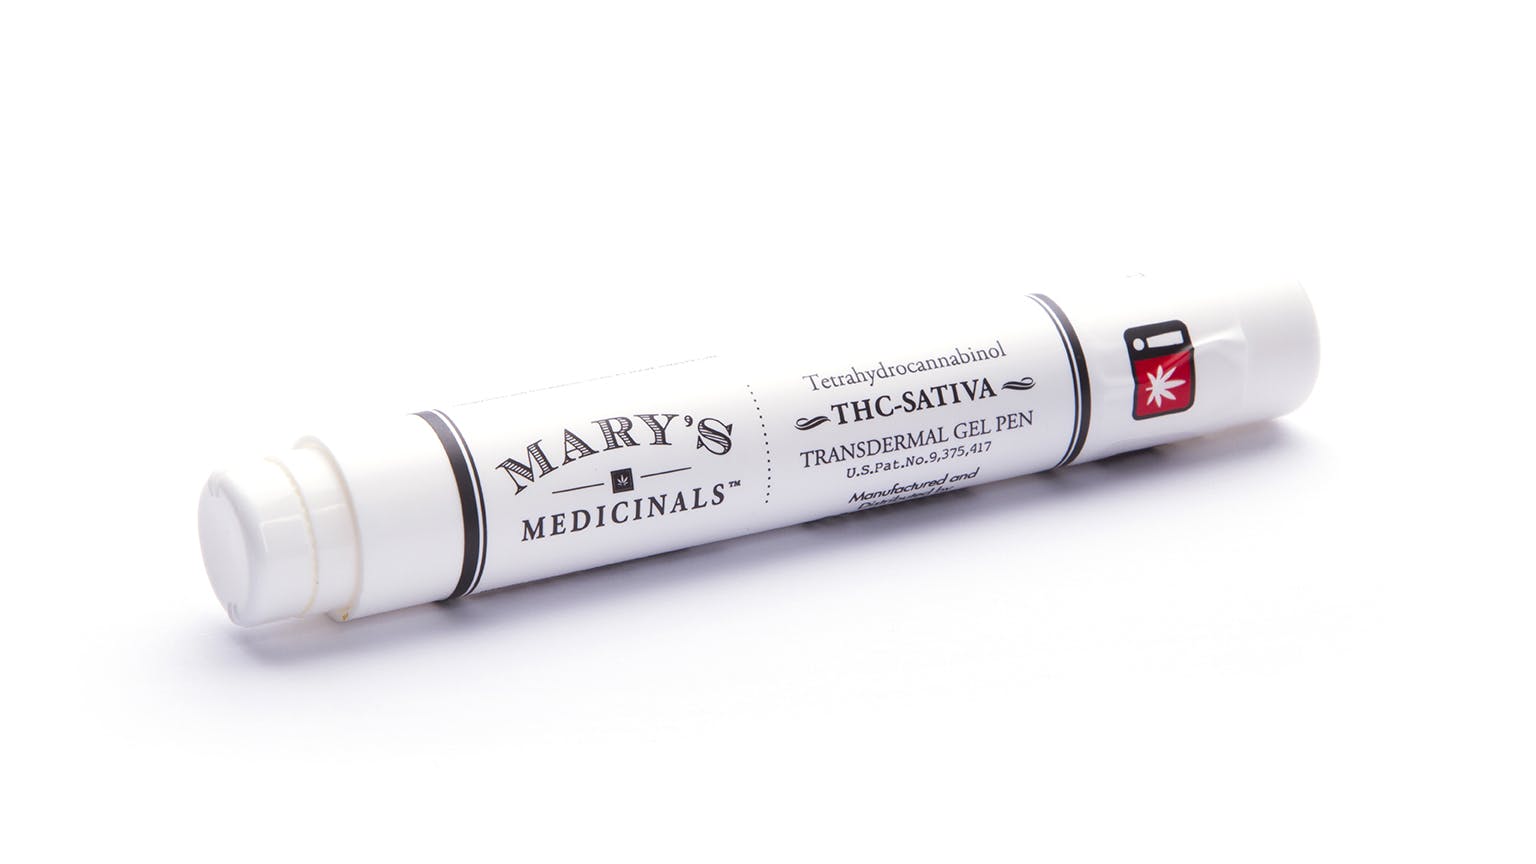 marijuana-dispensaries-midway-dispensary-in-chicago-marys-medicinals-sativa-gel-pen